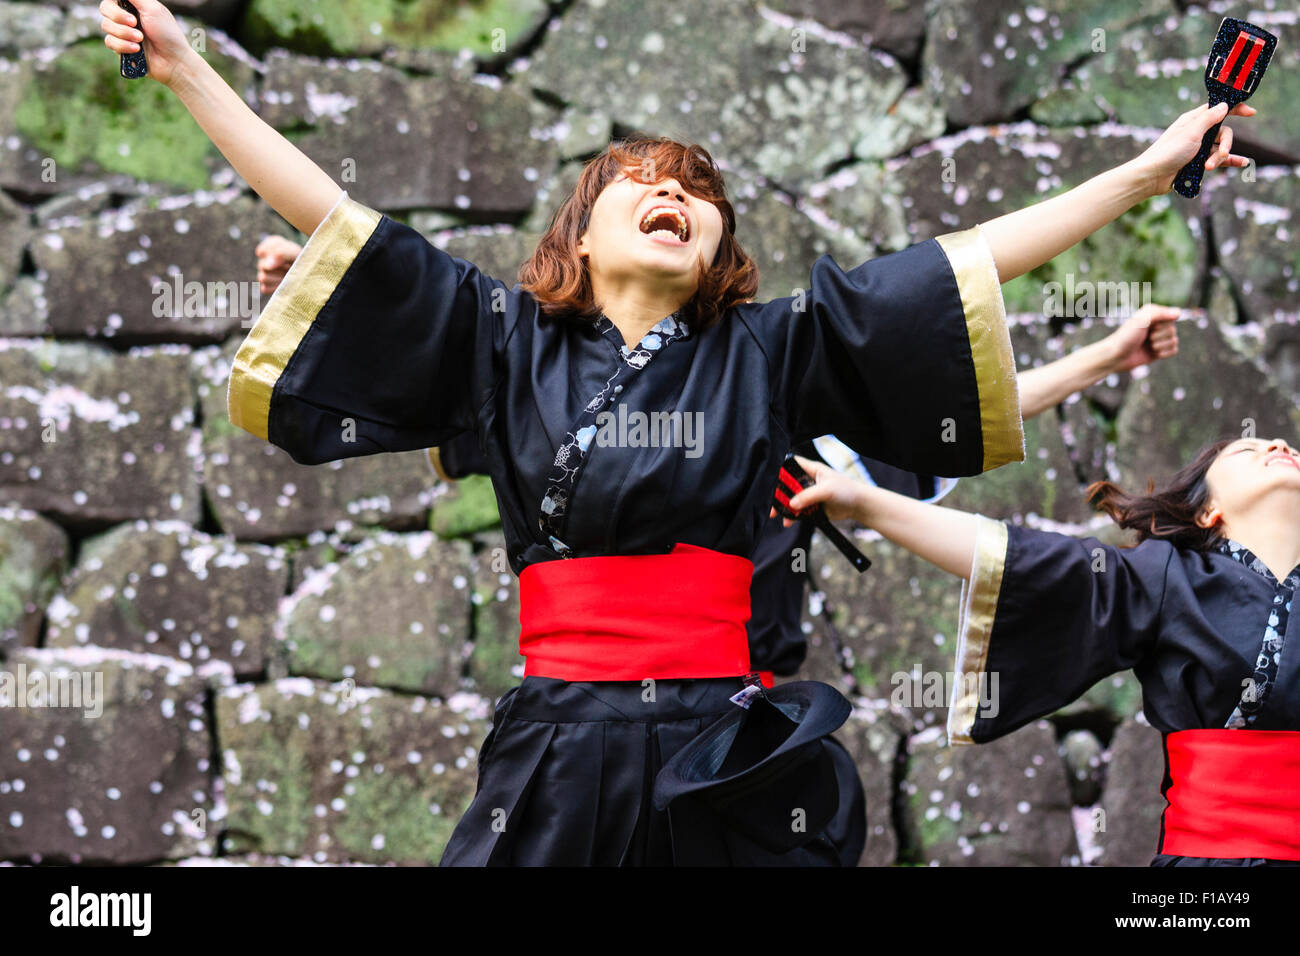 Japanische Frauen Yosakoi Tänzer tanzen in Schwarz yukata Jacke und Holding naruko, hölzerne Klöppel, mit Kopf nach hinten geworfen, und die Arme ausgestreckt. Stockfoto